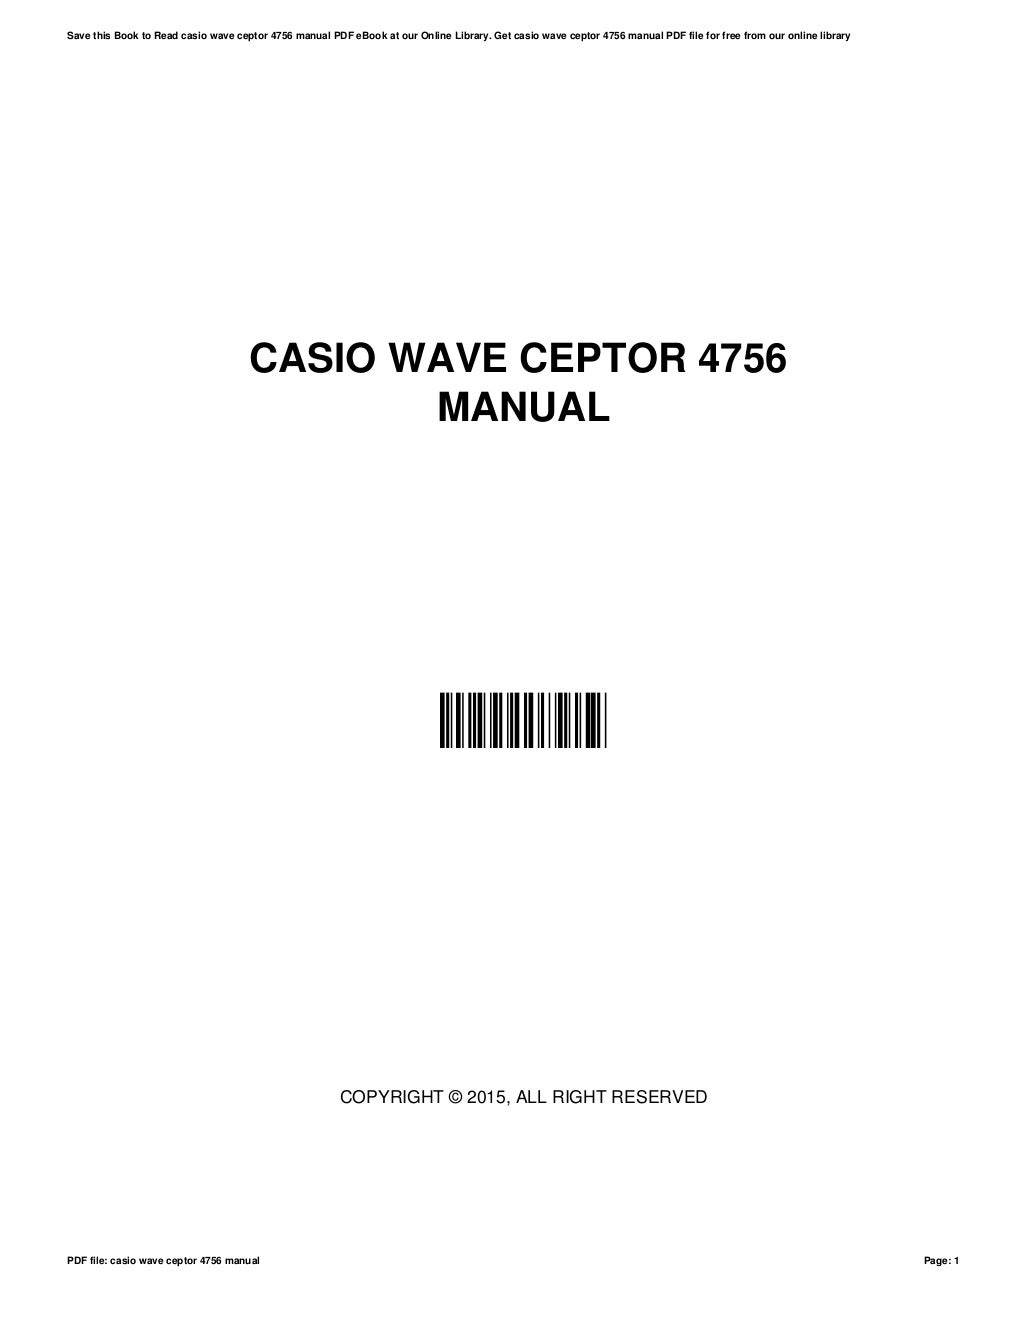 Casio wave-ceptor-4756-manual